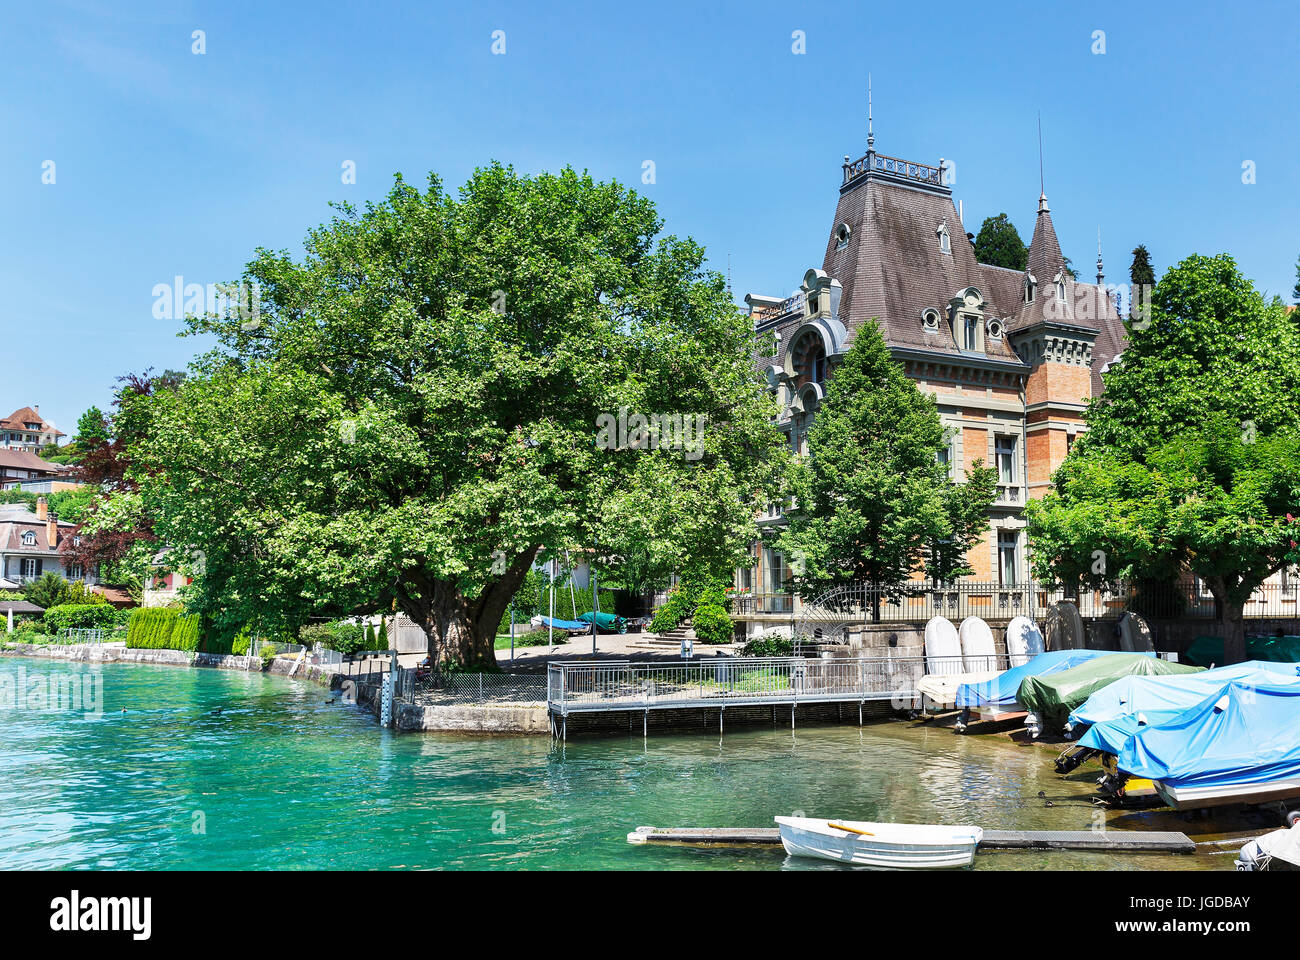 Castle on Lake Thun in Switzerland Stock Photo